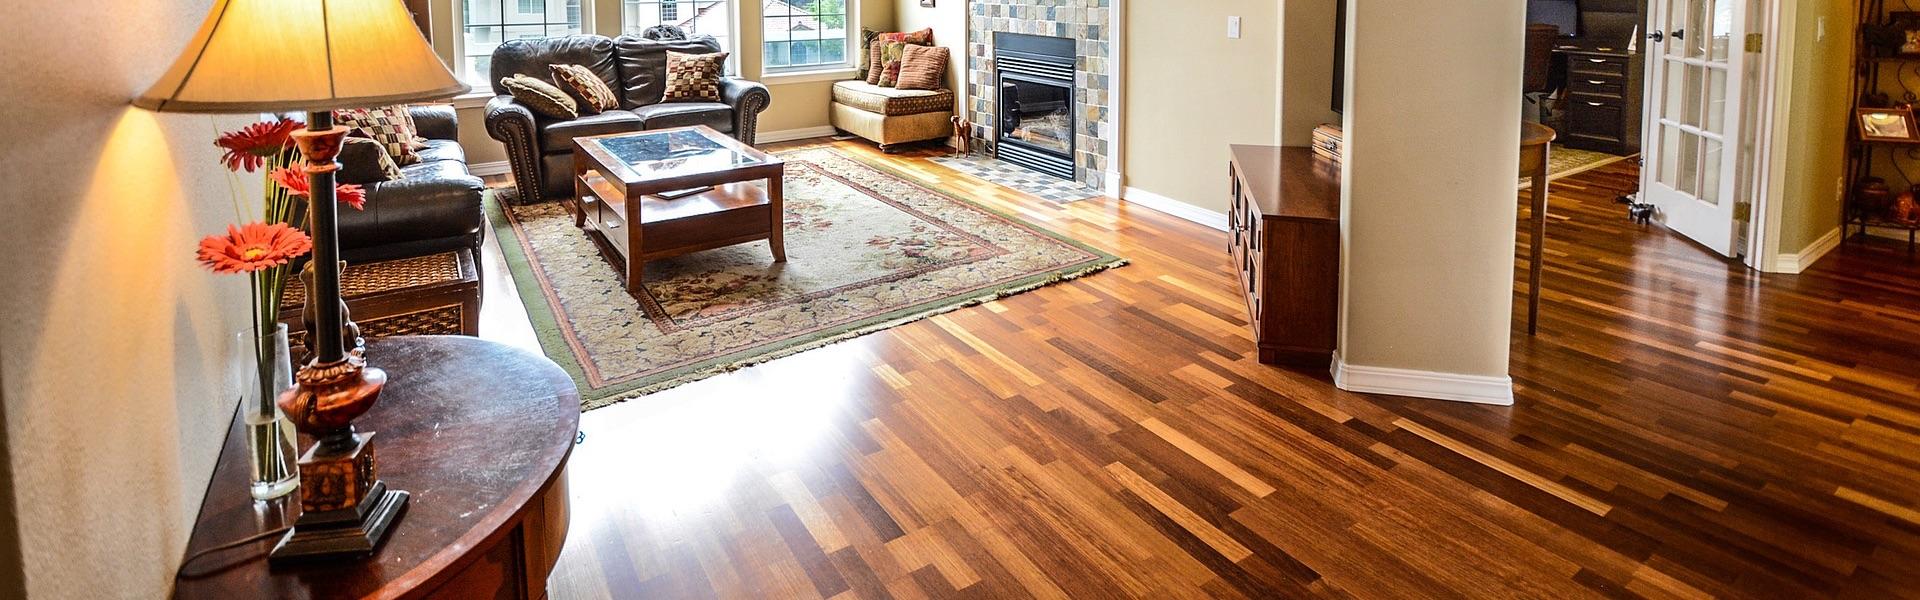 Wood flooring in modern home